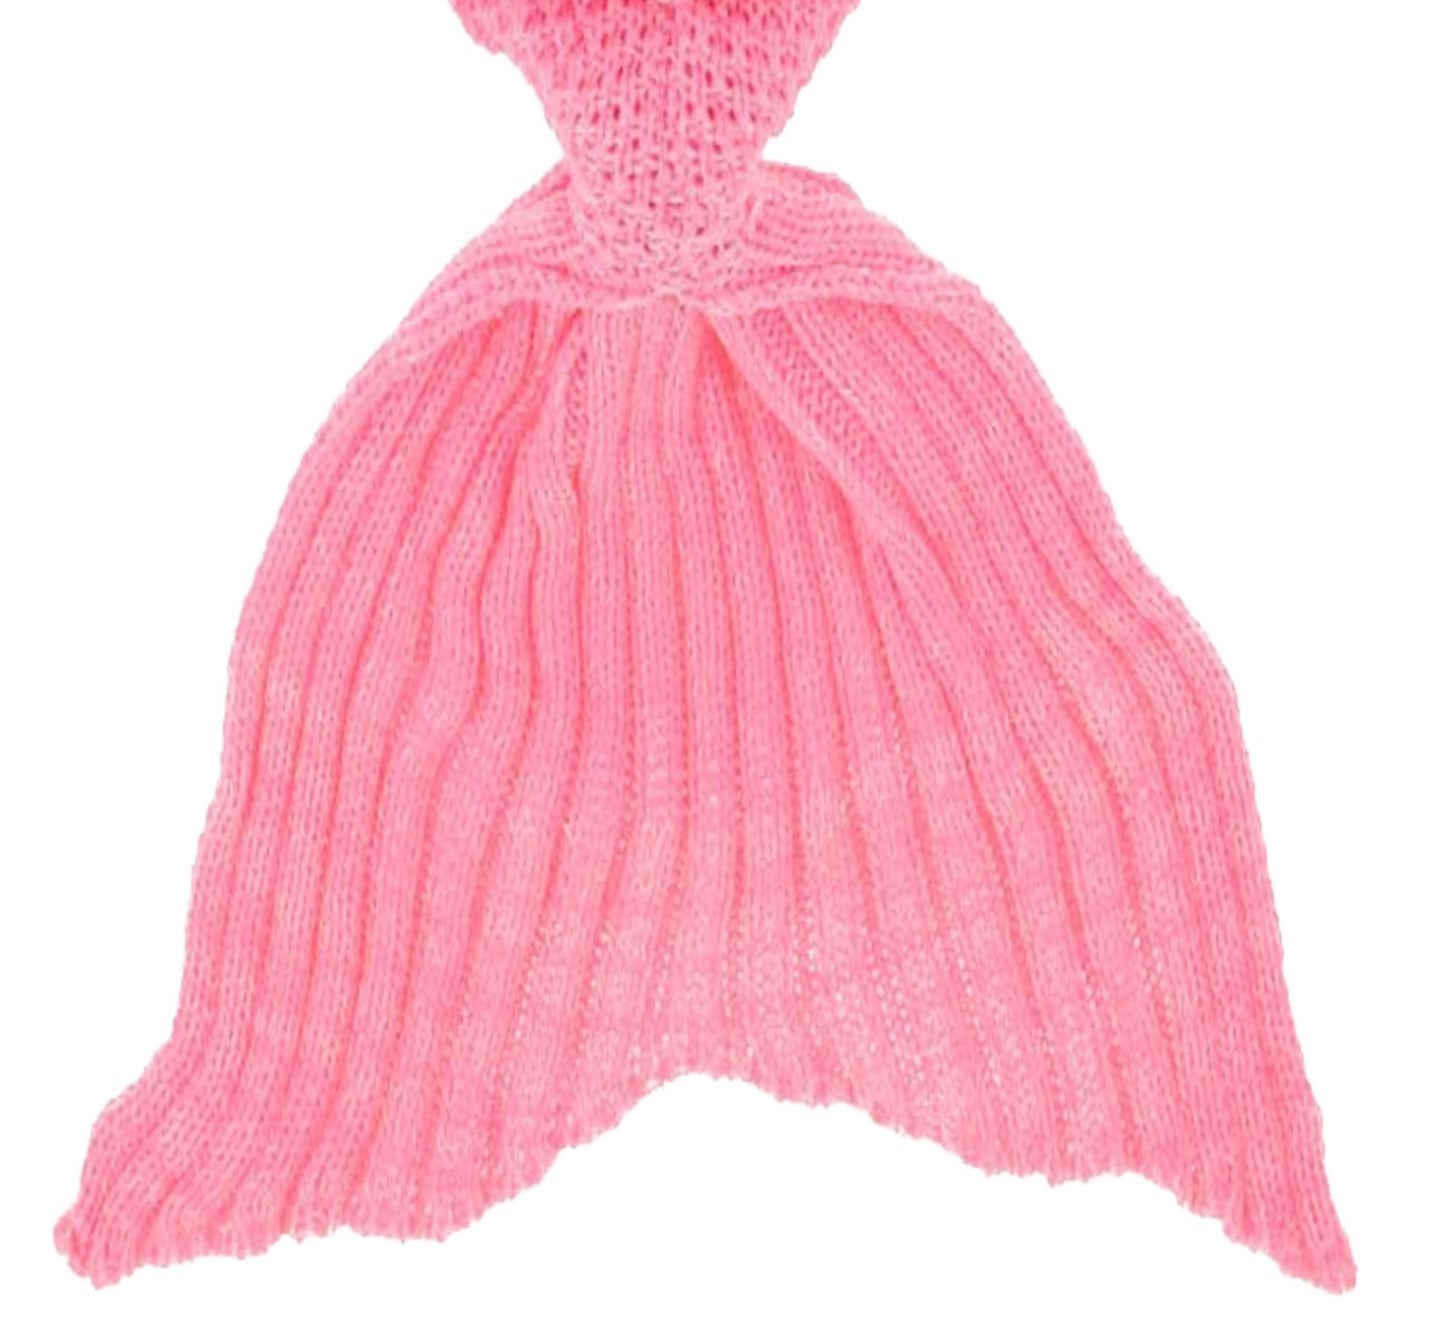 Crochet Adult/Teens Mermaid Blanket with Tail - Pink